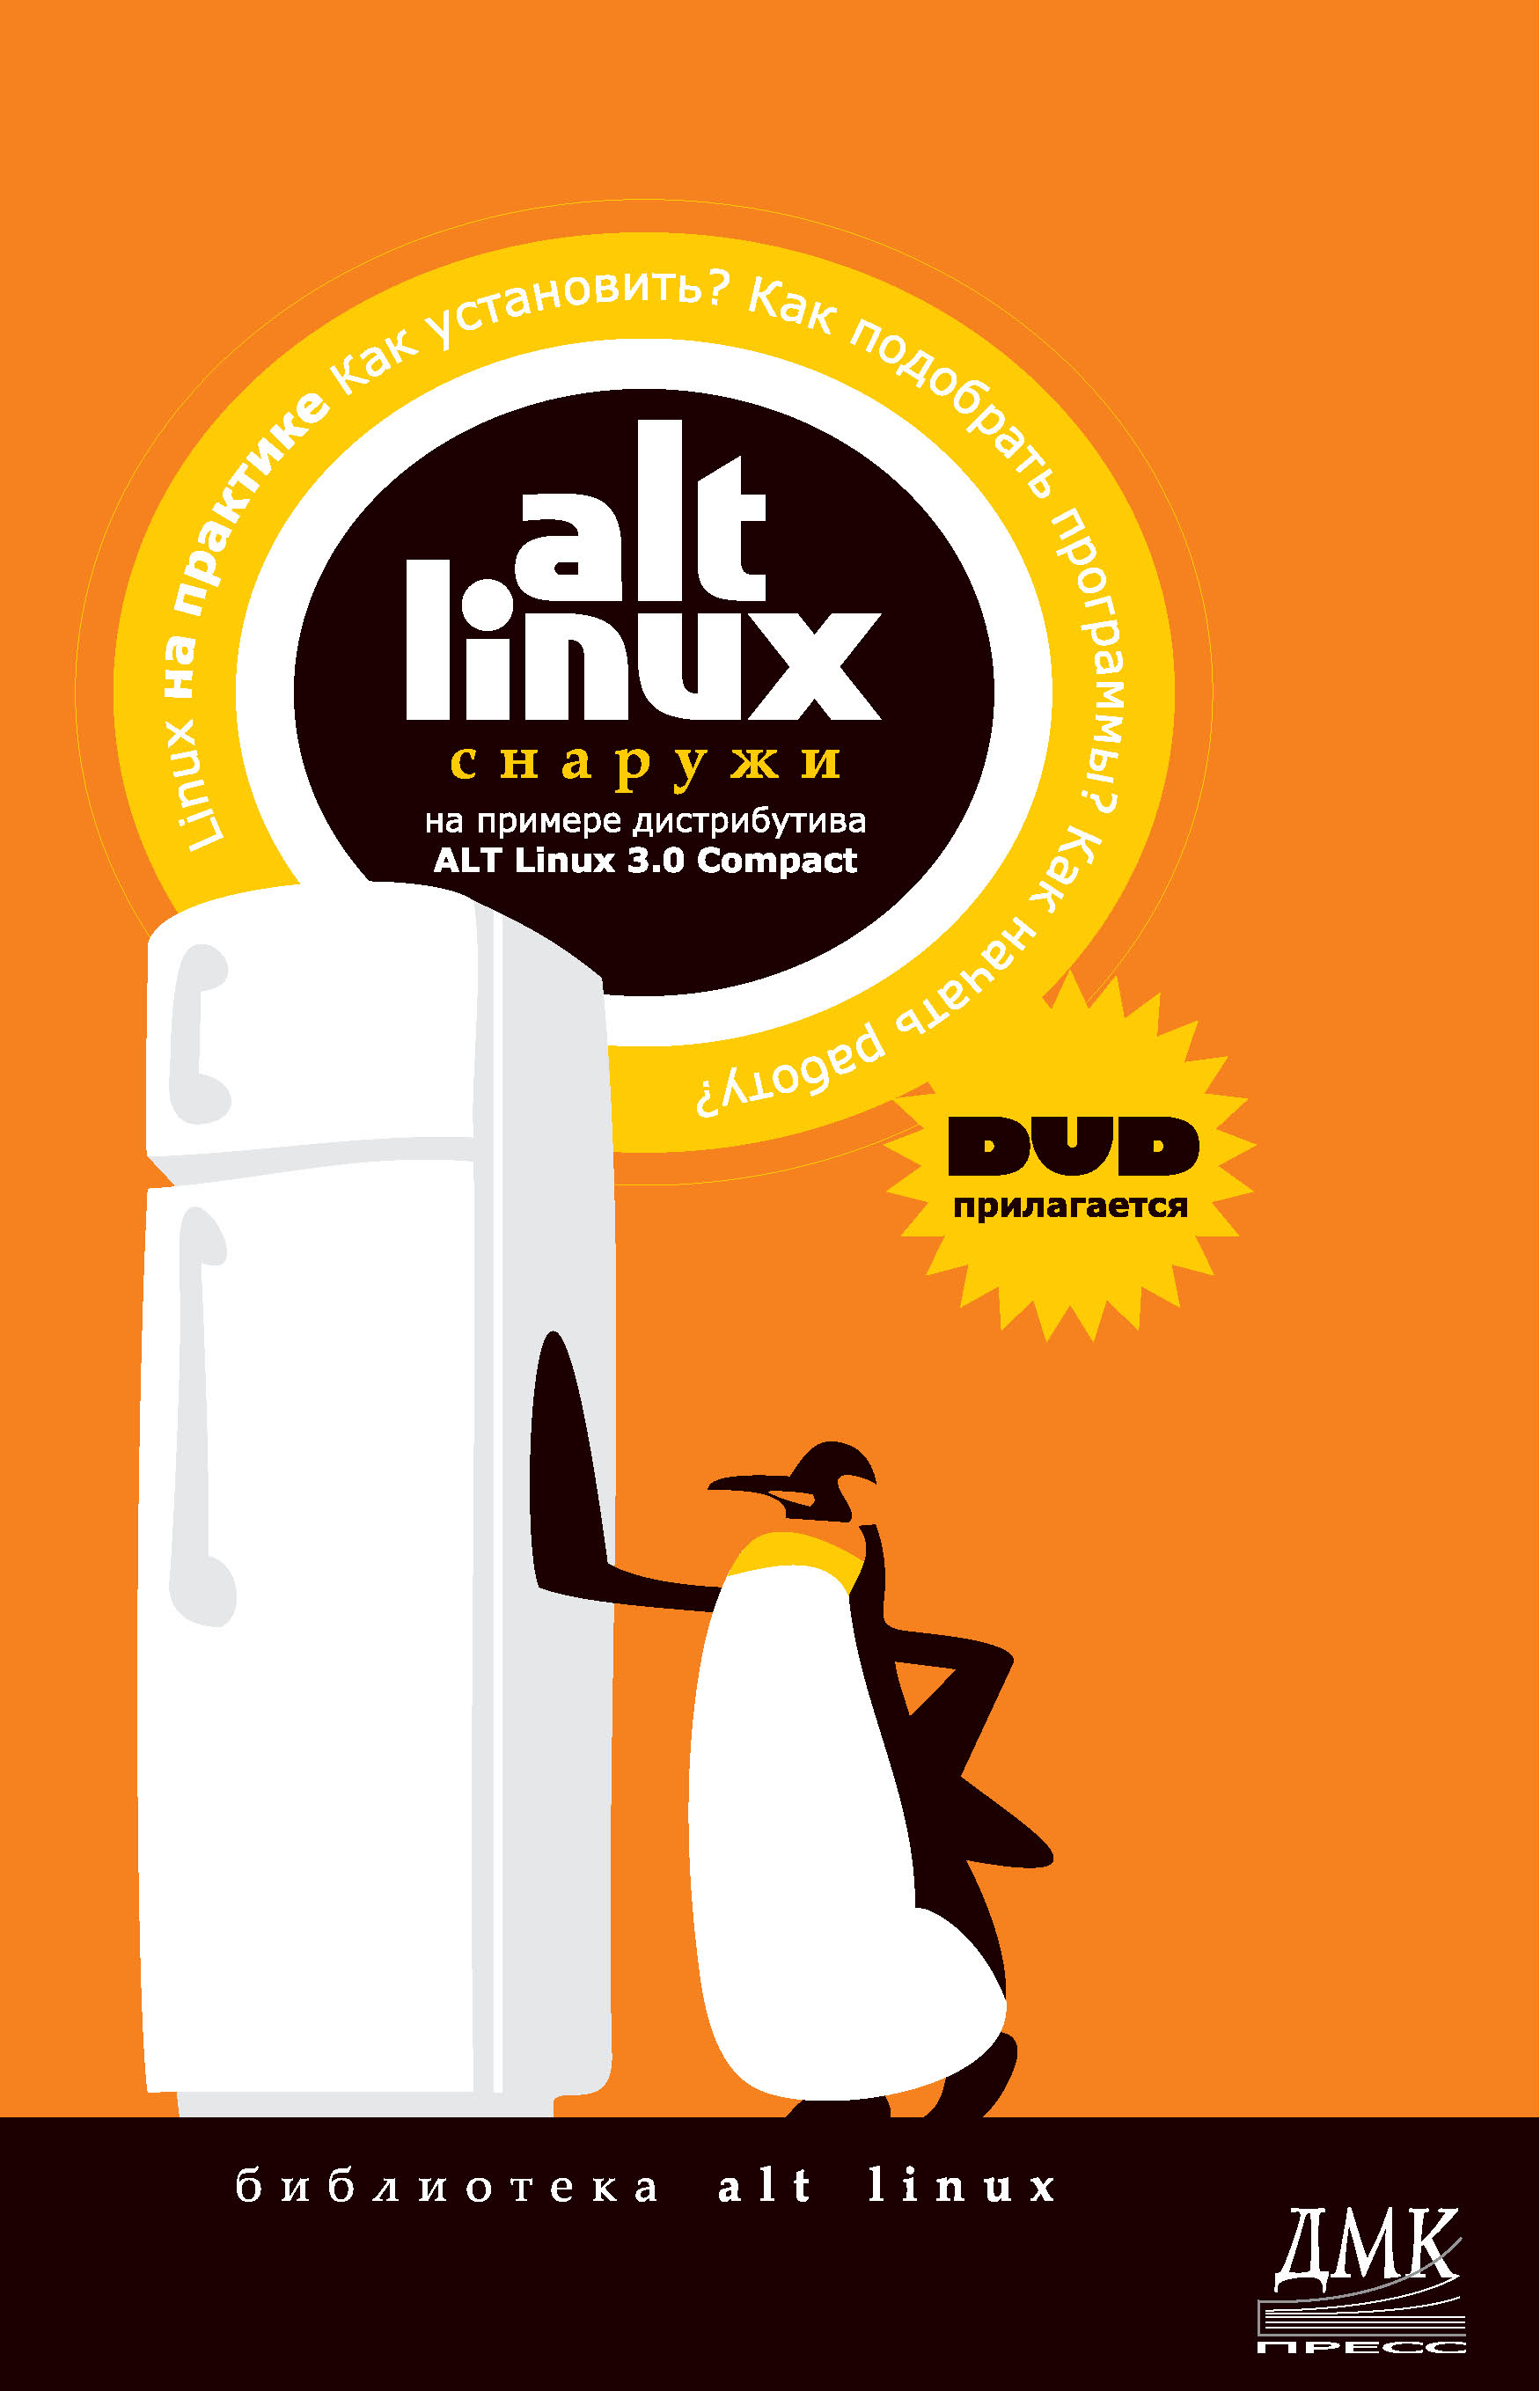 ALT Linuxснаружи. ALT Linux изнутри